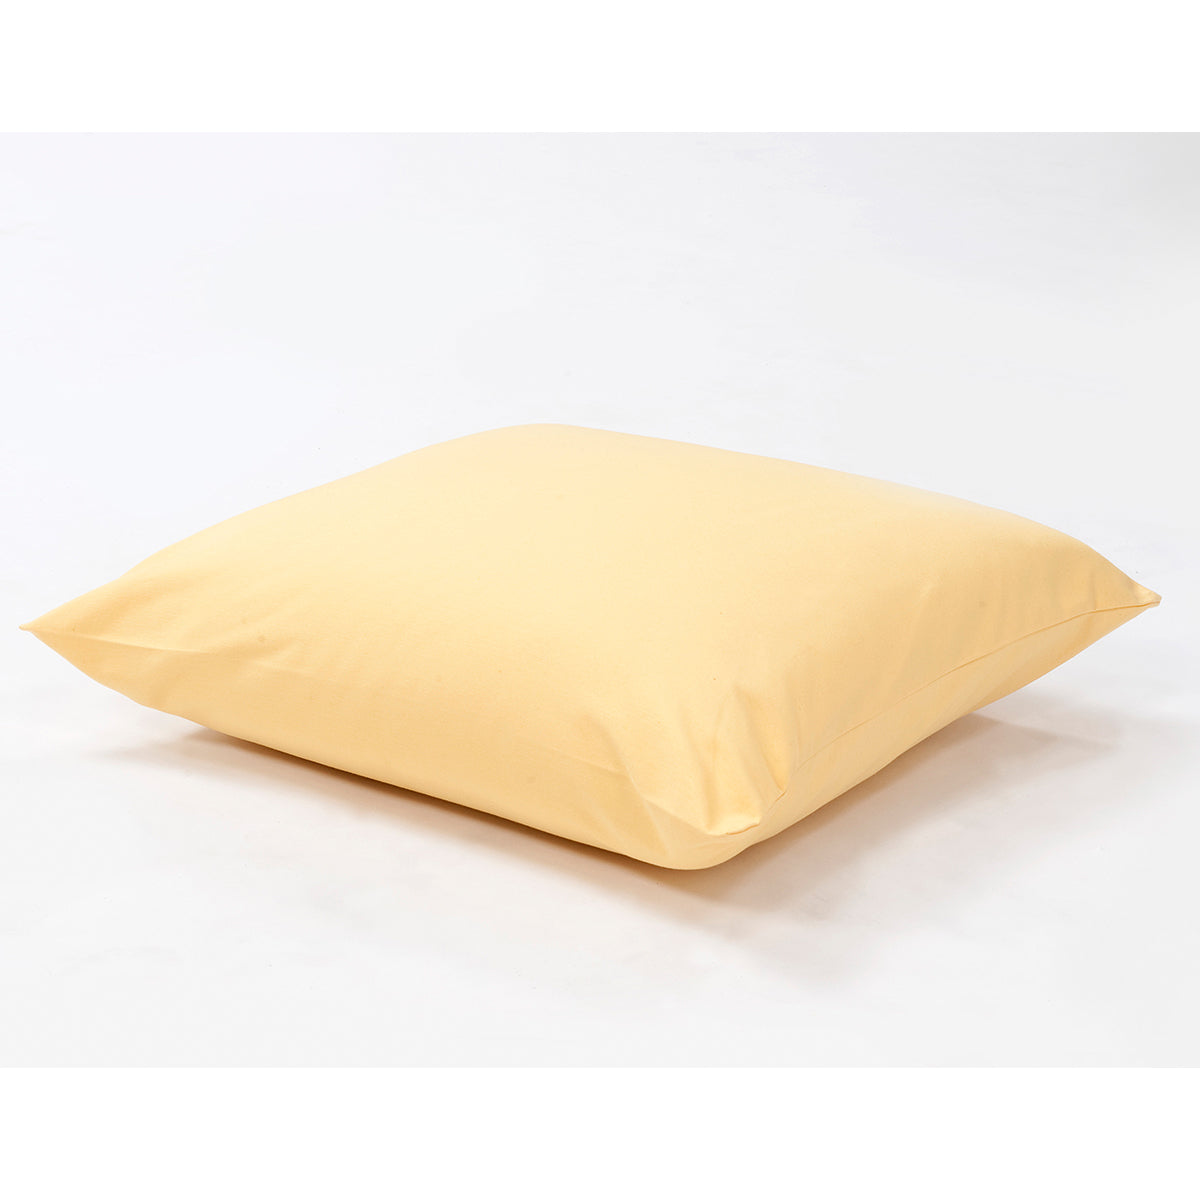 Kuscheliges Kissen für Hängesessel | mit Bezug in 11 verschiedenen Farben erhältlich | Schafwolle mit weicher Schaumstofffüllung | 60x60 cm